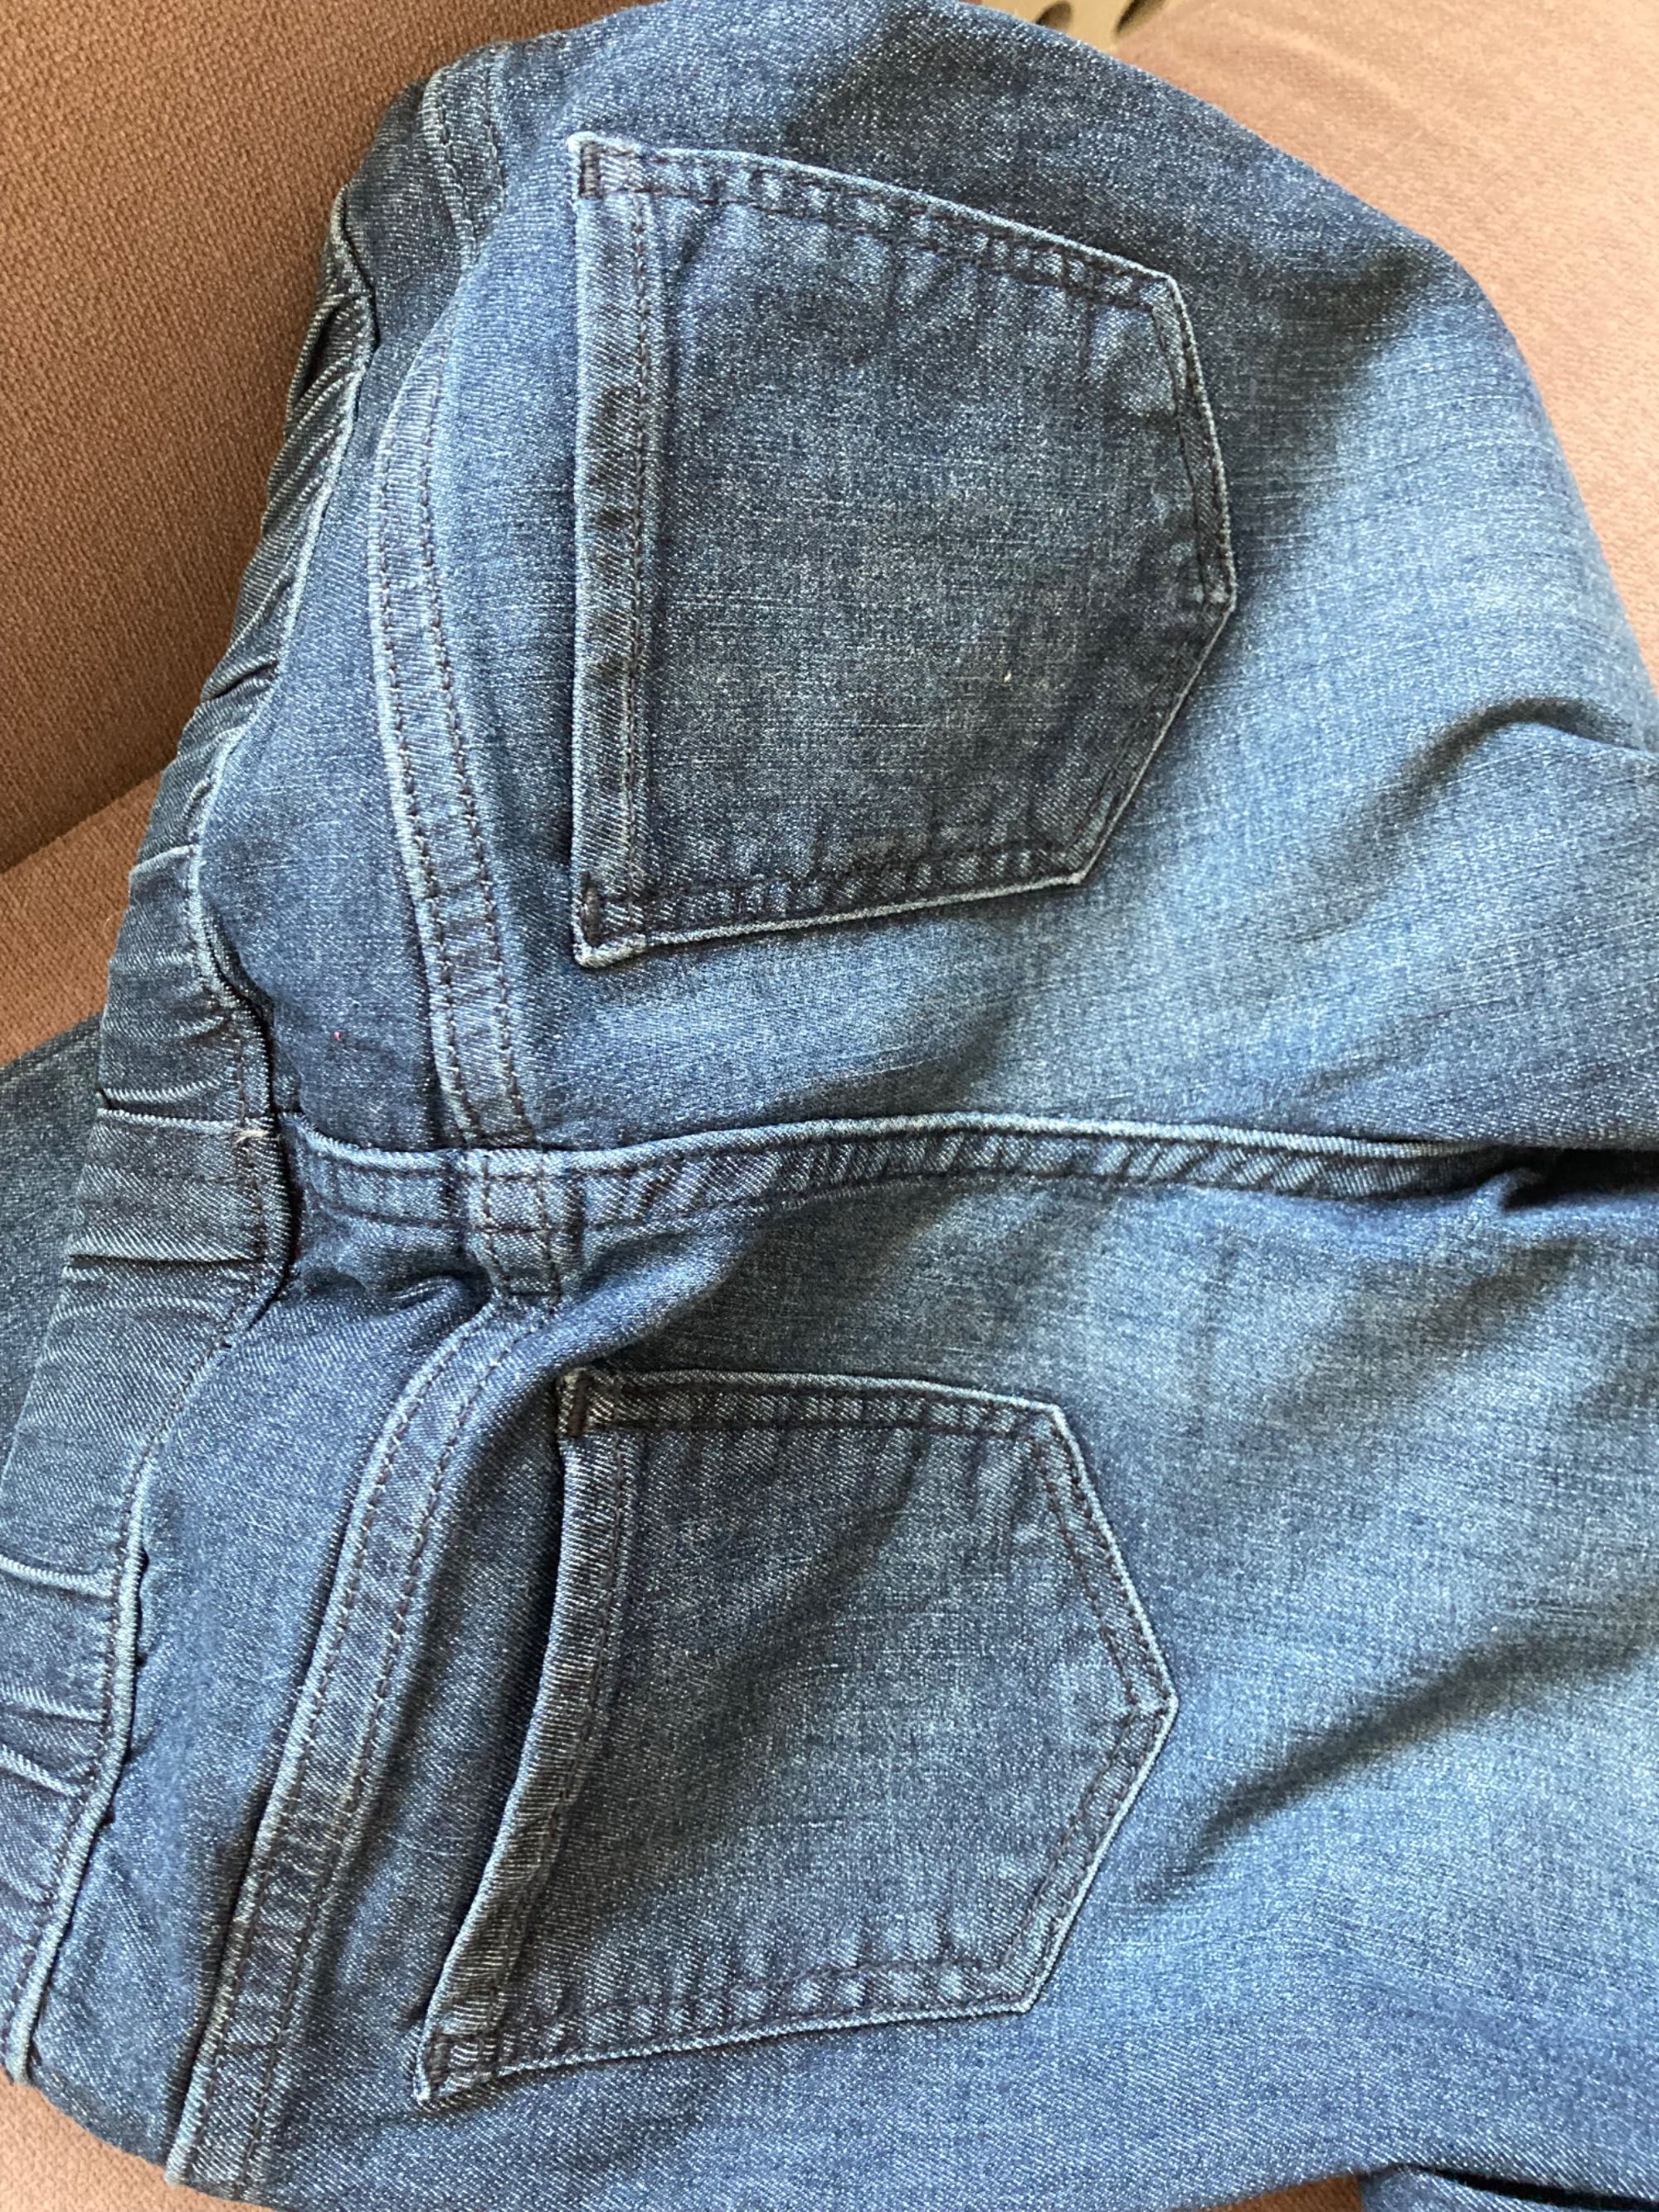 Jeansy H&M legginsy dżinsowe lekko elastyczne rozmiar 134